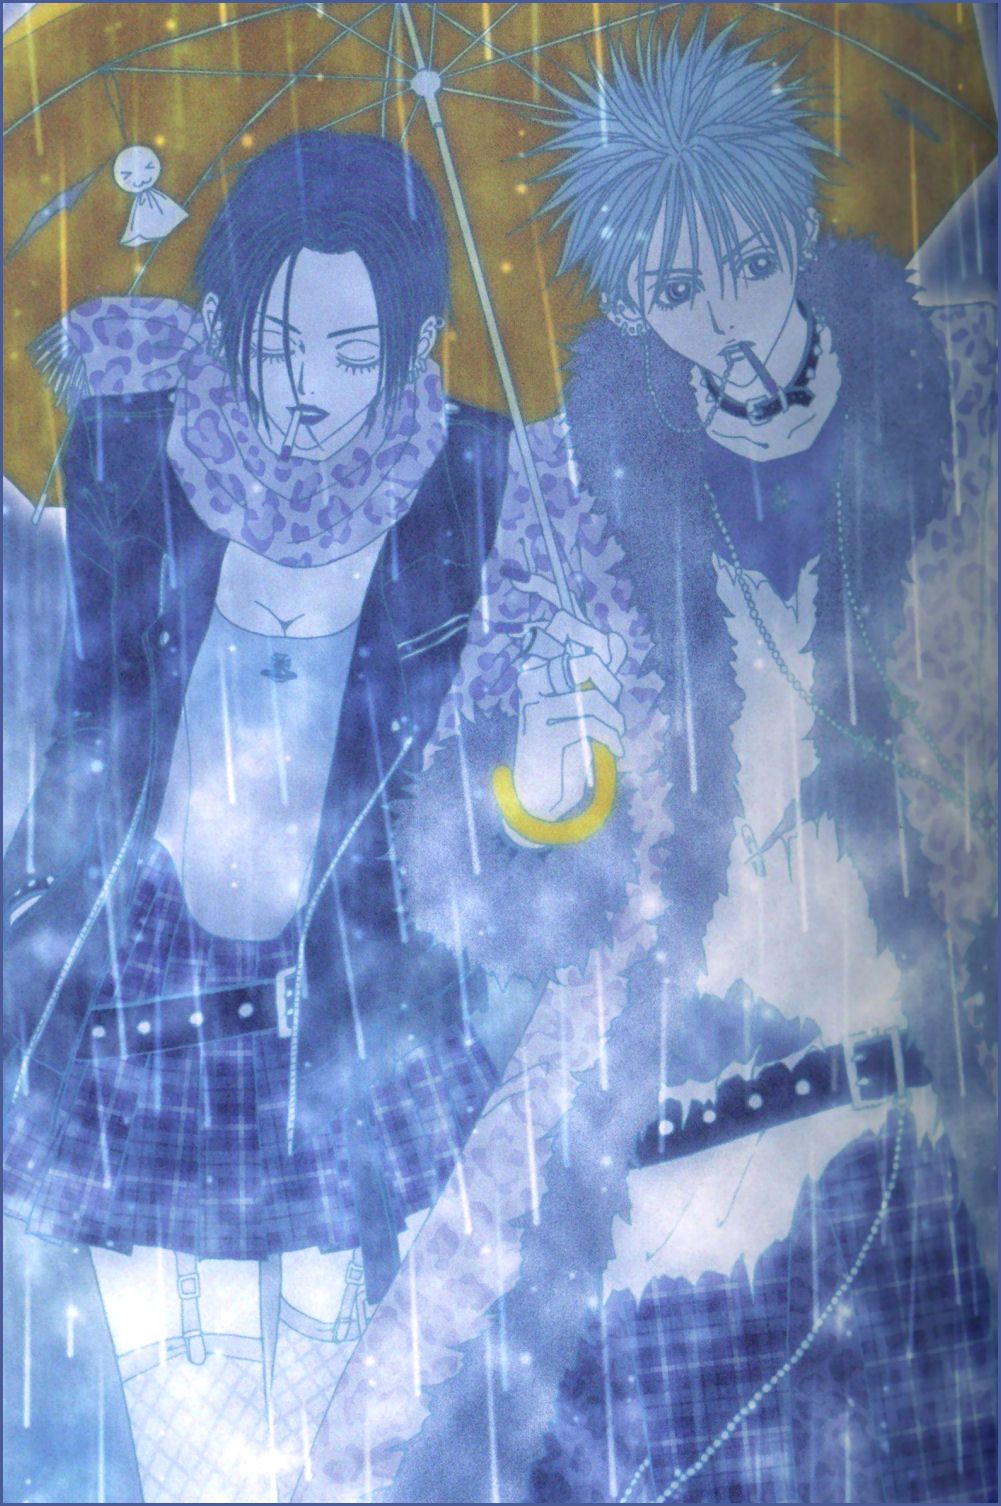 NANA (Series) Ai Wallpaper Anime Image Board. Nana manga, Anime, Nana osaki